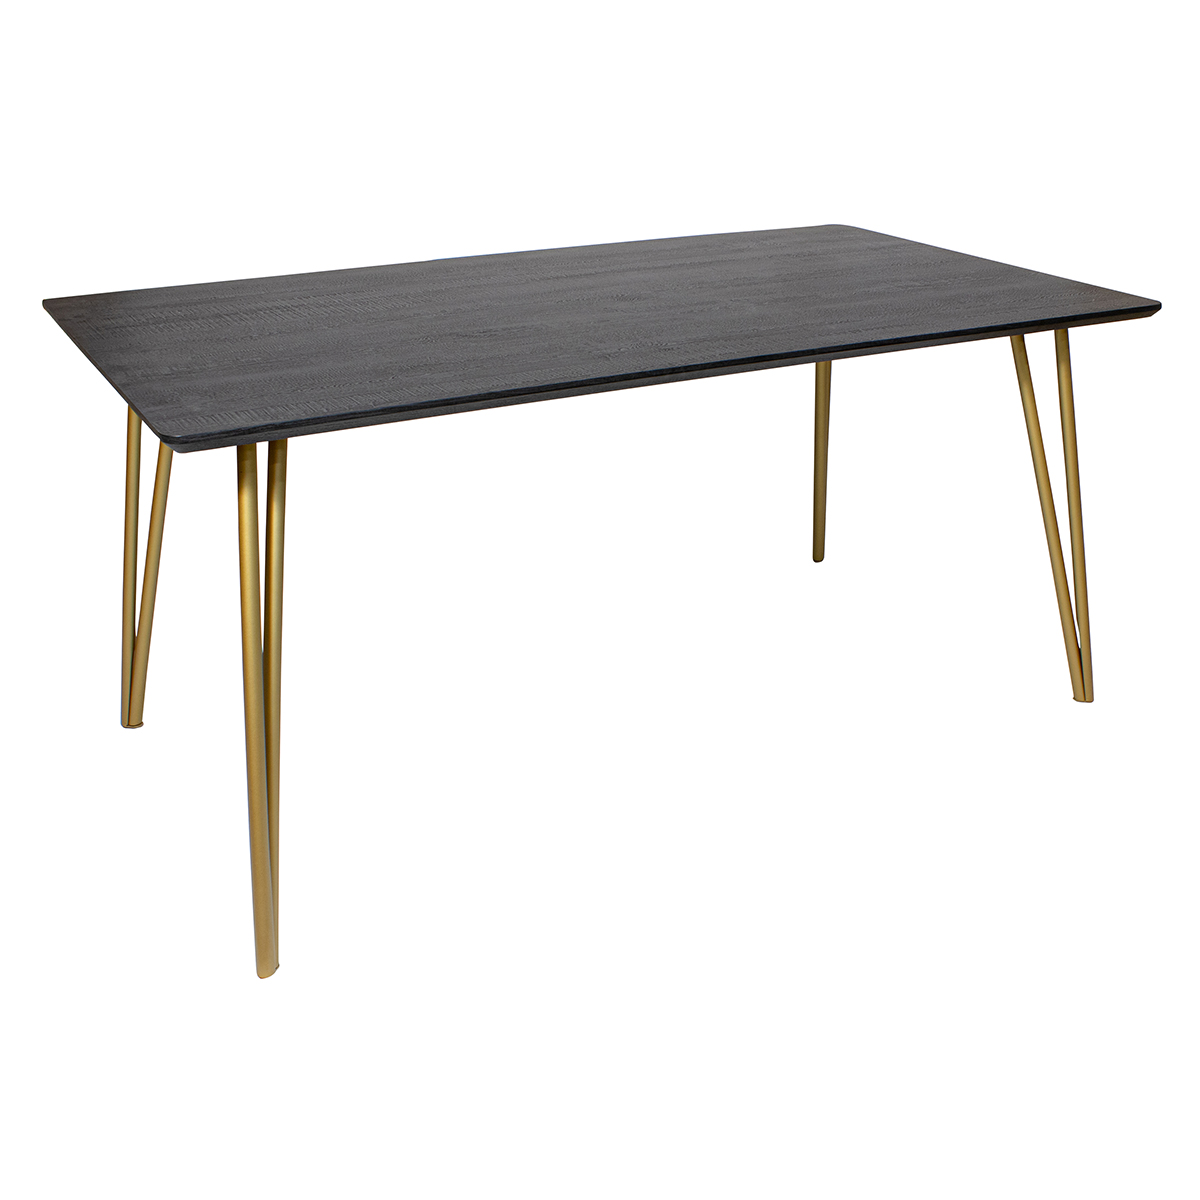 Table finition bois pieds en métal doré 160x90